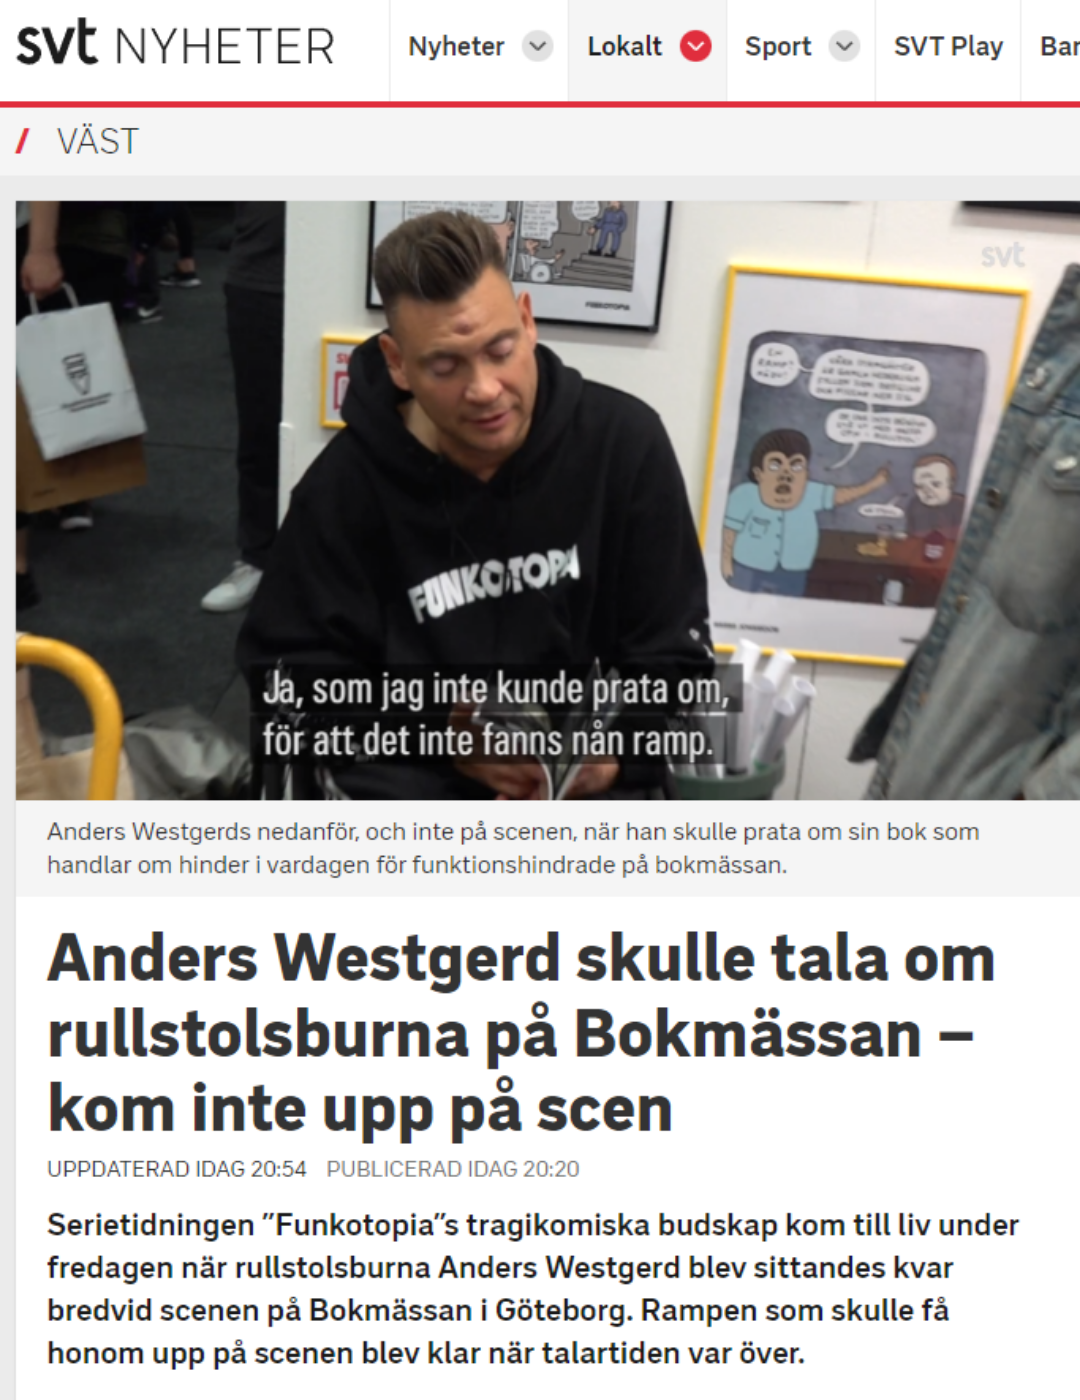 Skärmdump från SVT Nyheters hemsida. Anders i bild.